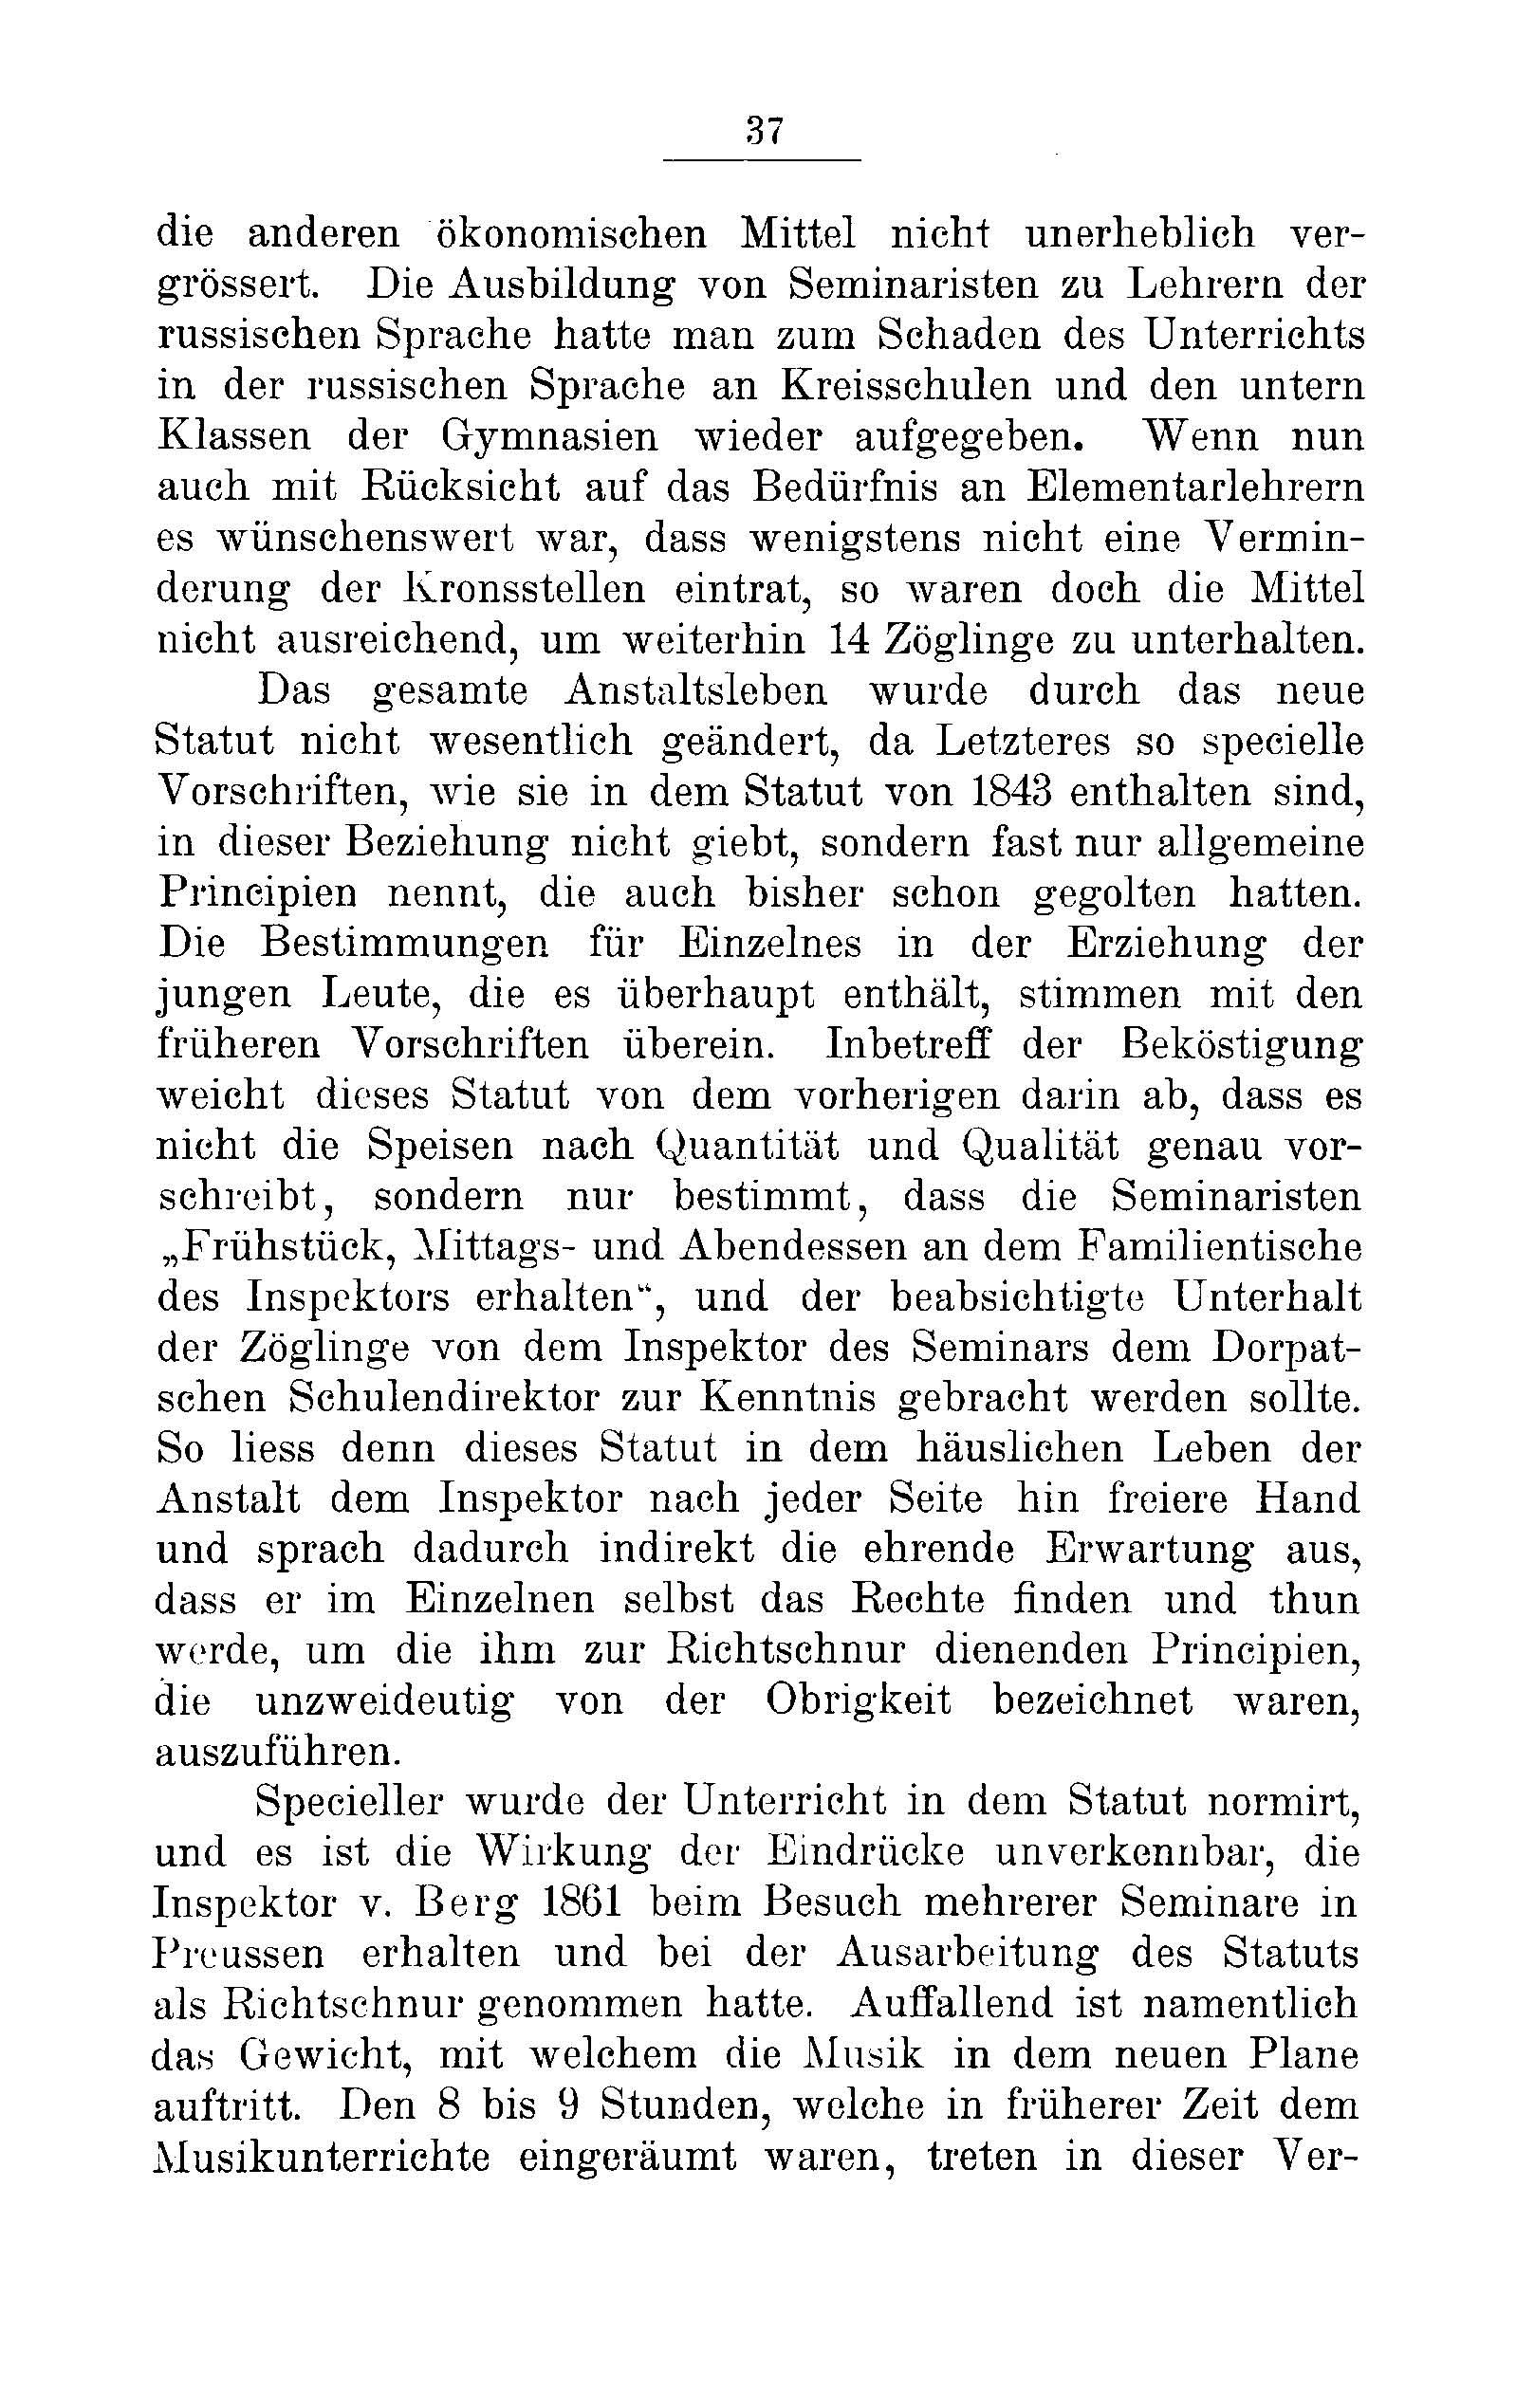 Das Erste Dorpatsche Lehrer-Seminar (1890) | 39. Main body of text